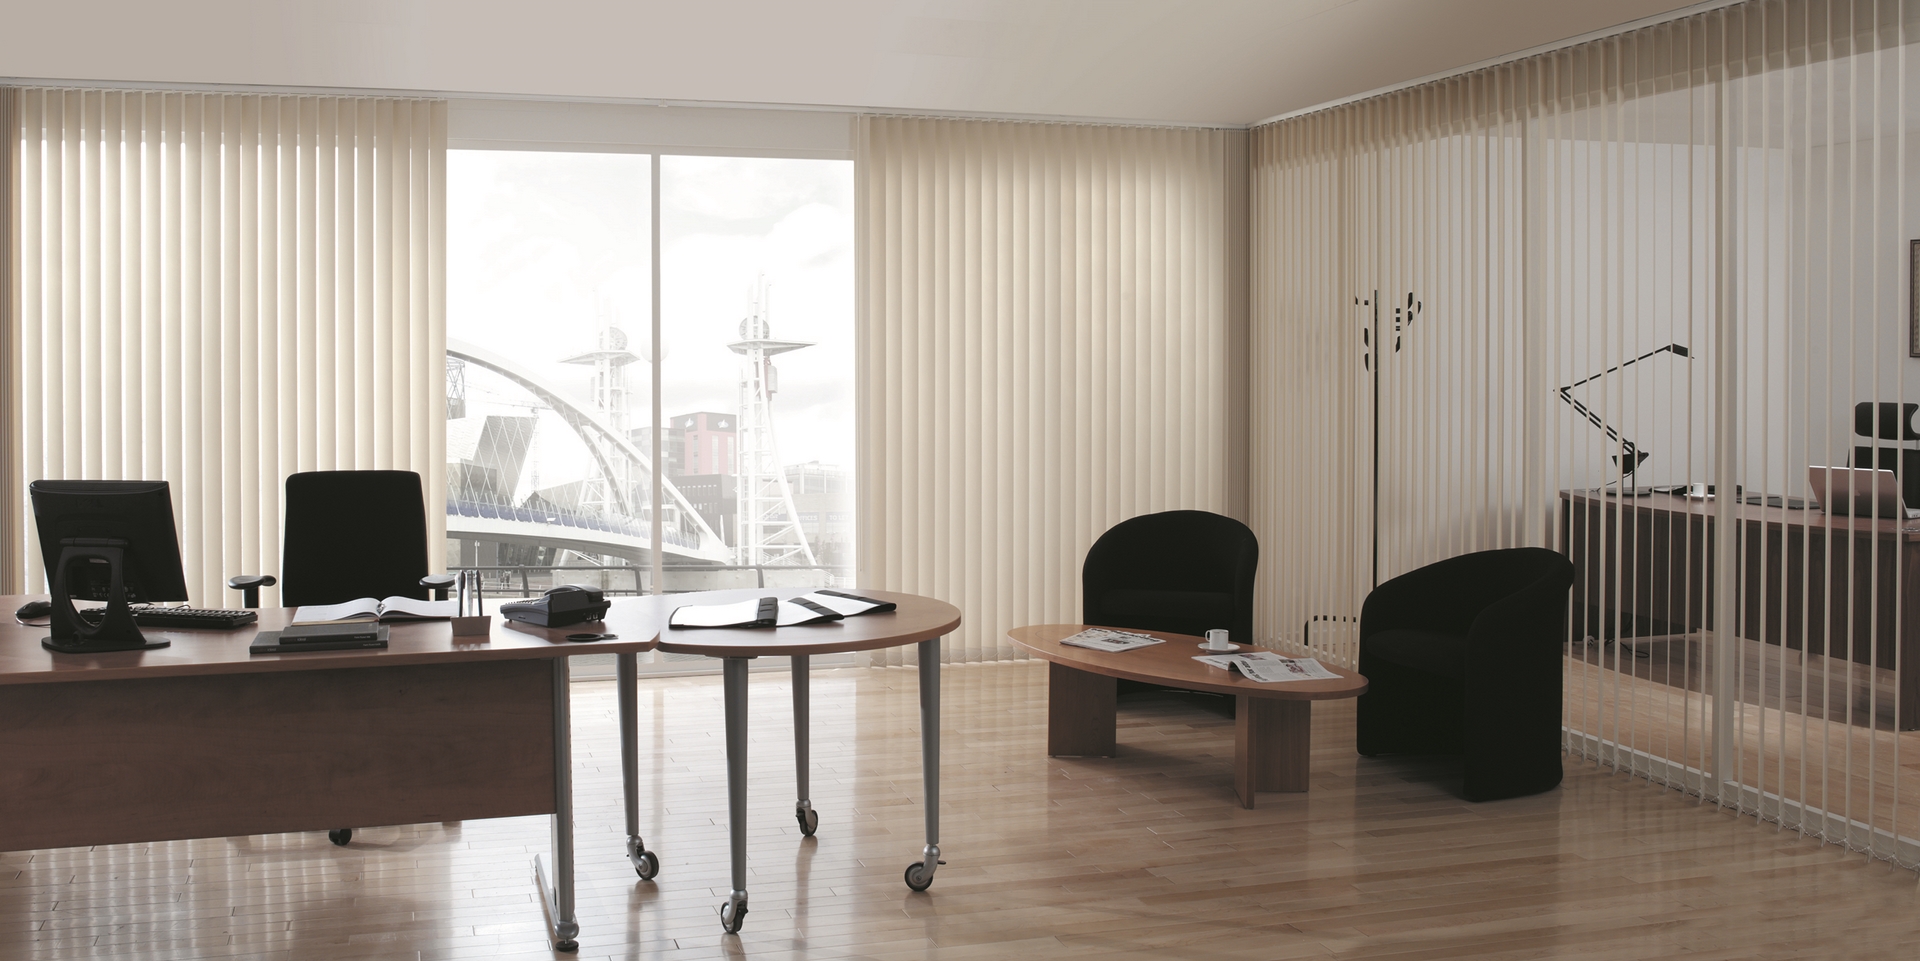 Rèm lá dọc được dùng phổ biến trong các văn phòng làm việc